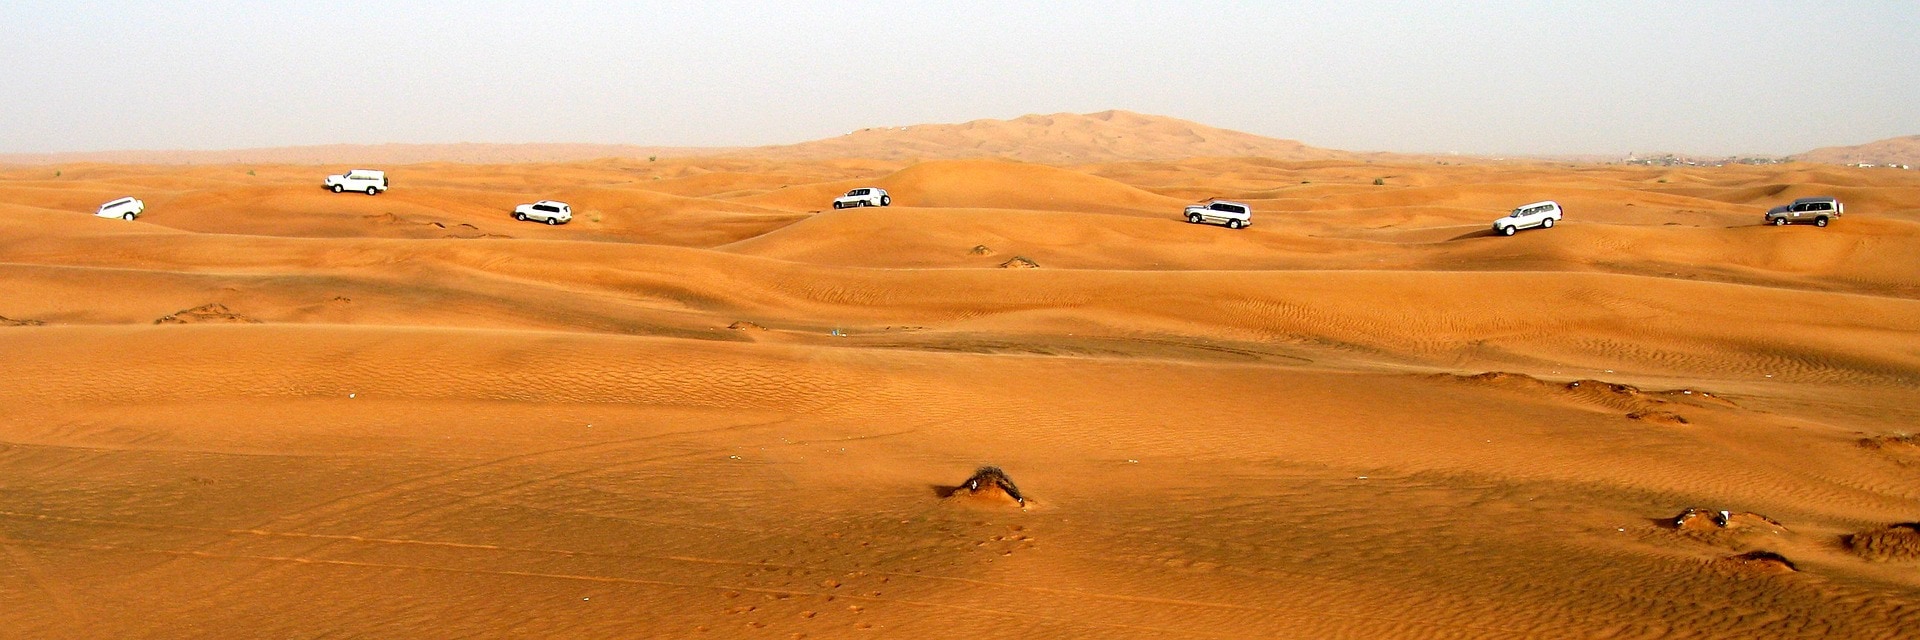 Go on a desert safari